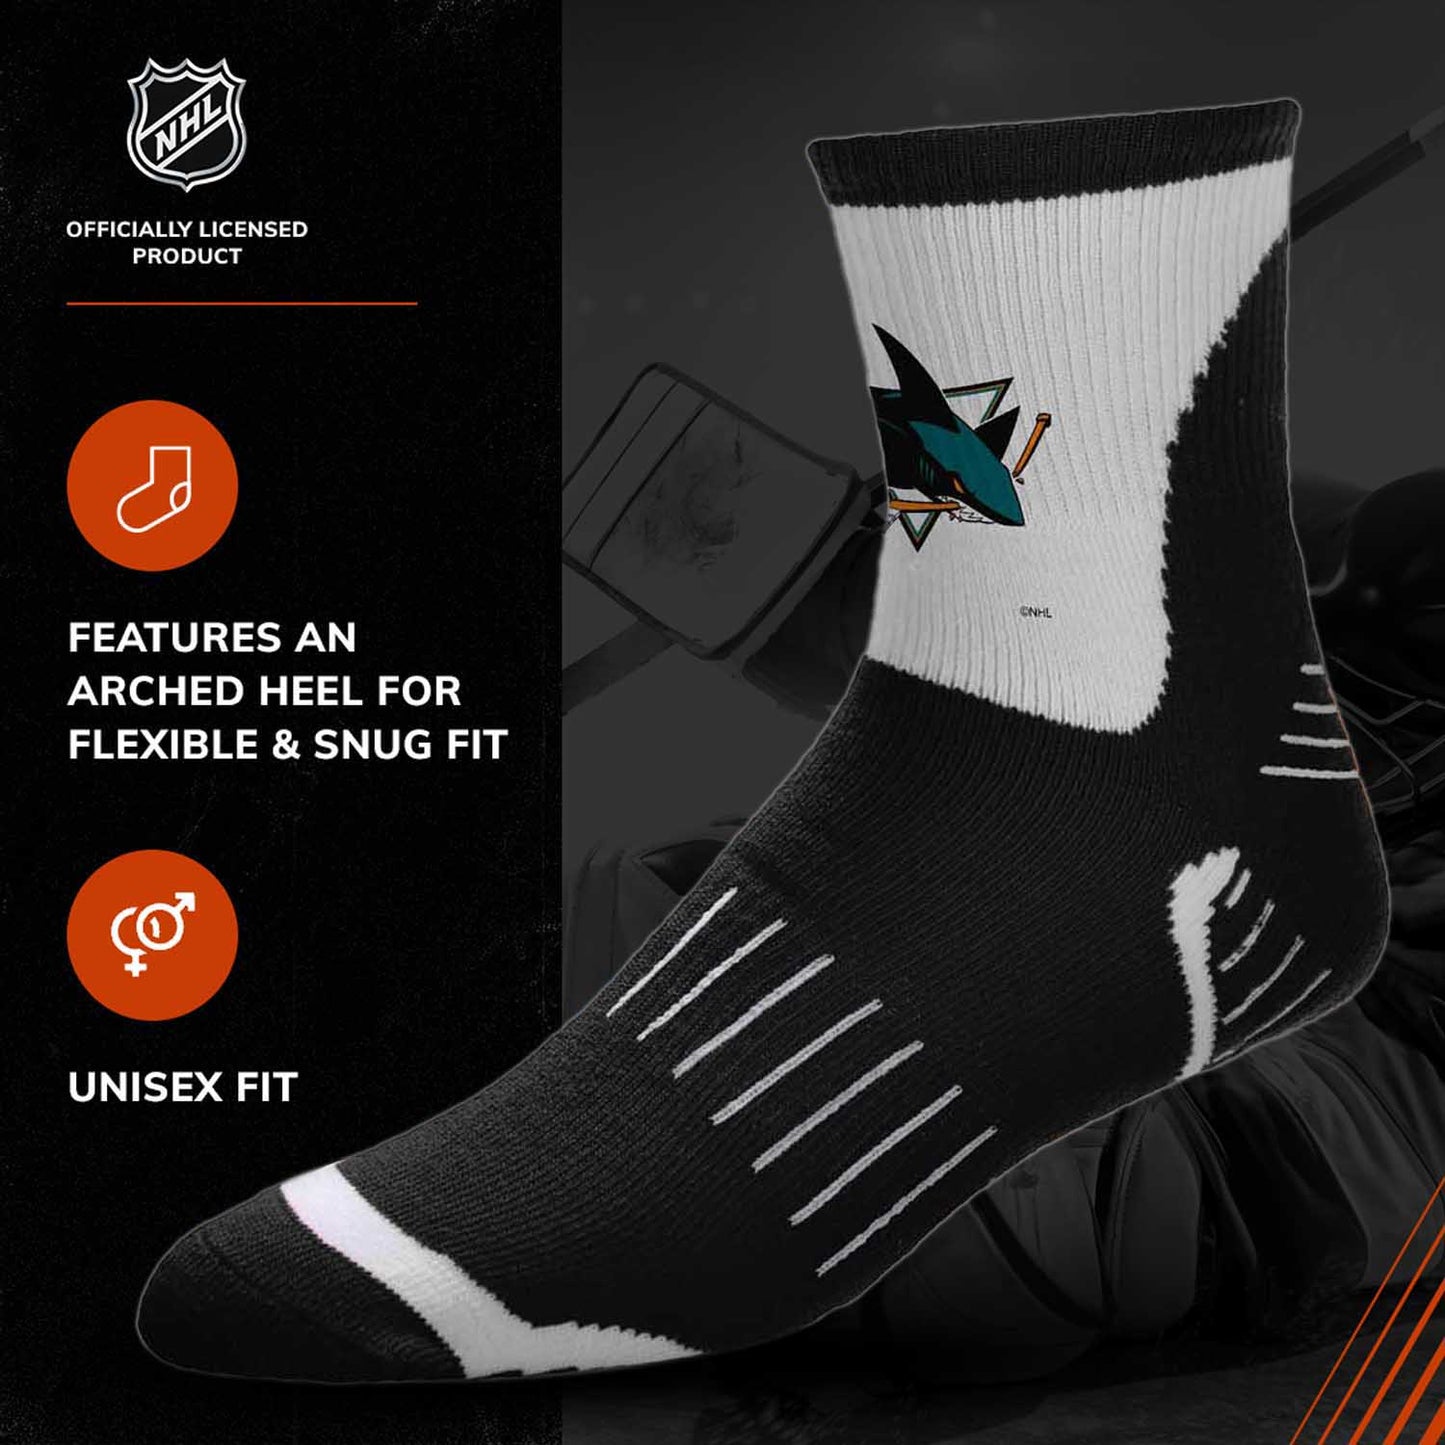 San Jose Sharks NHL Youth Surge Socks - Black